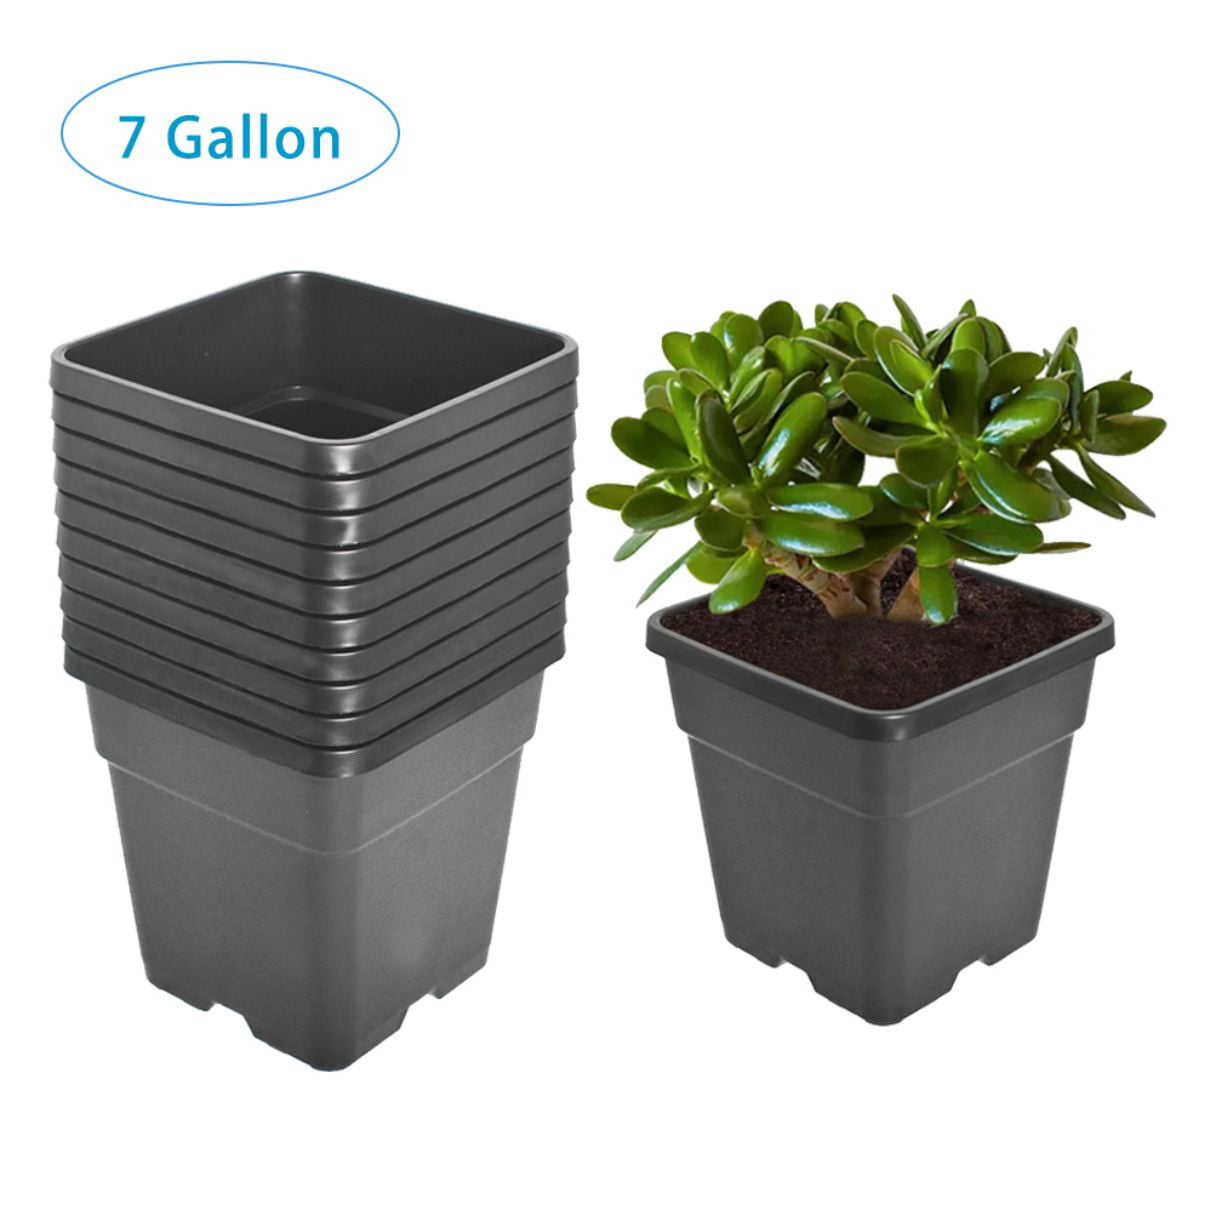 2 x Square 4.5 Litre Lt Plastic Plant Pots Square-Round Black Flower Pot 